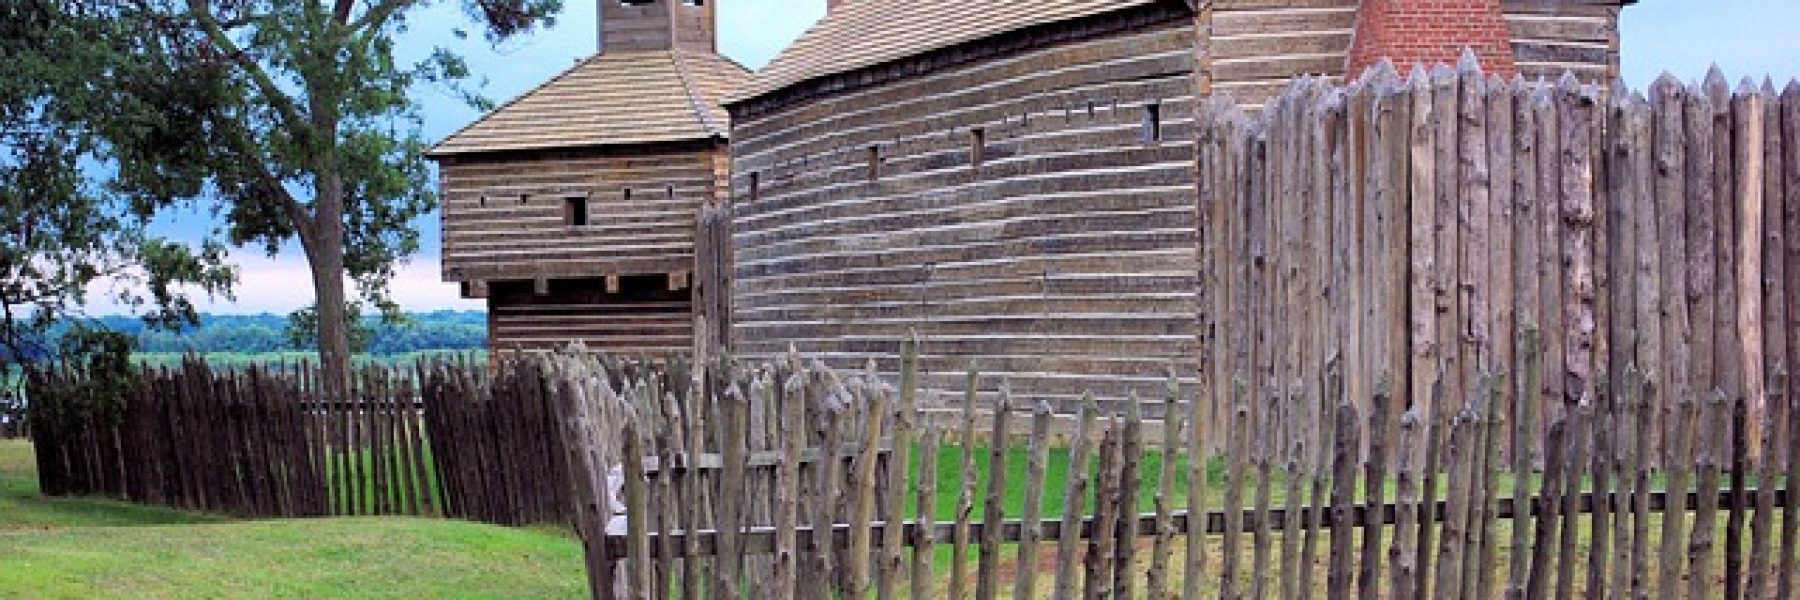 Fort De Soto Park History